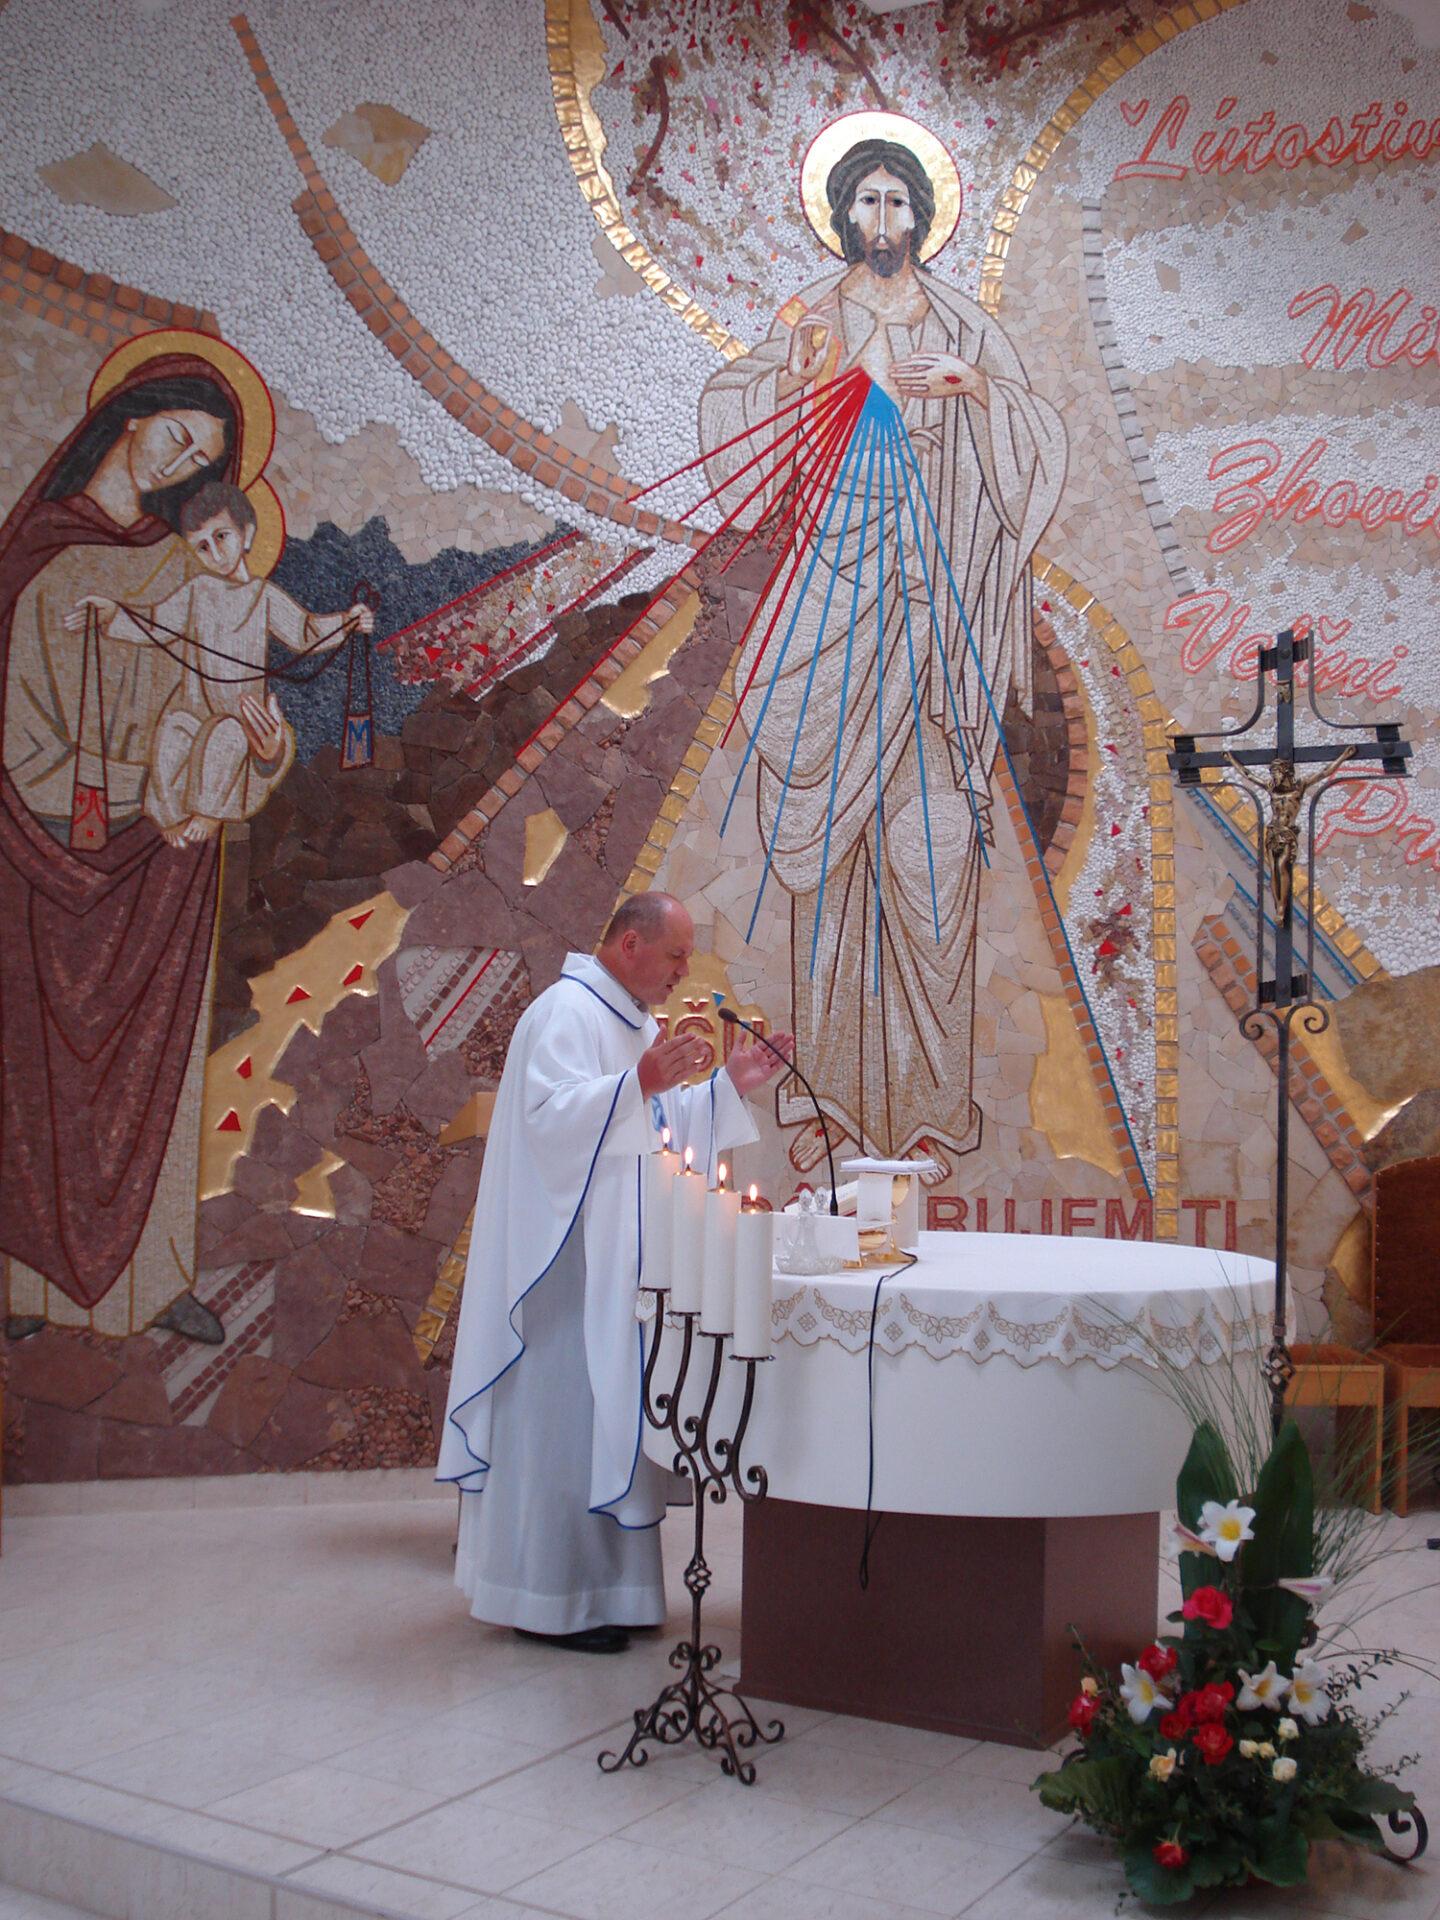 Špirituál Ľubomír Grega: Skutočná kňazská svätosť sa stavia na normálnej ľudskosti